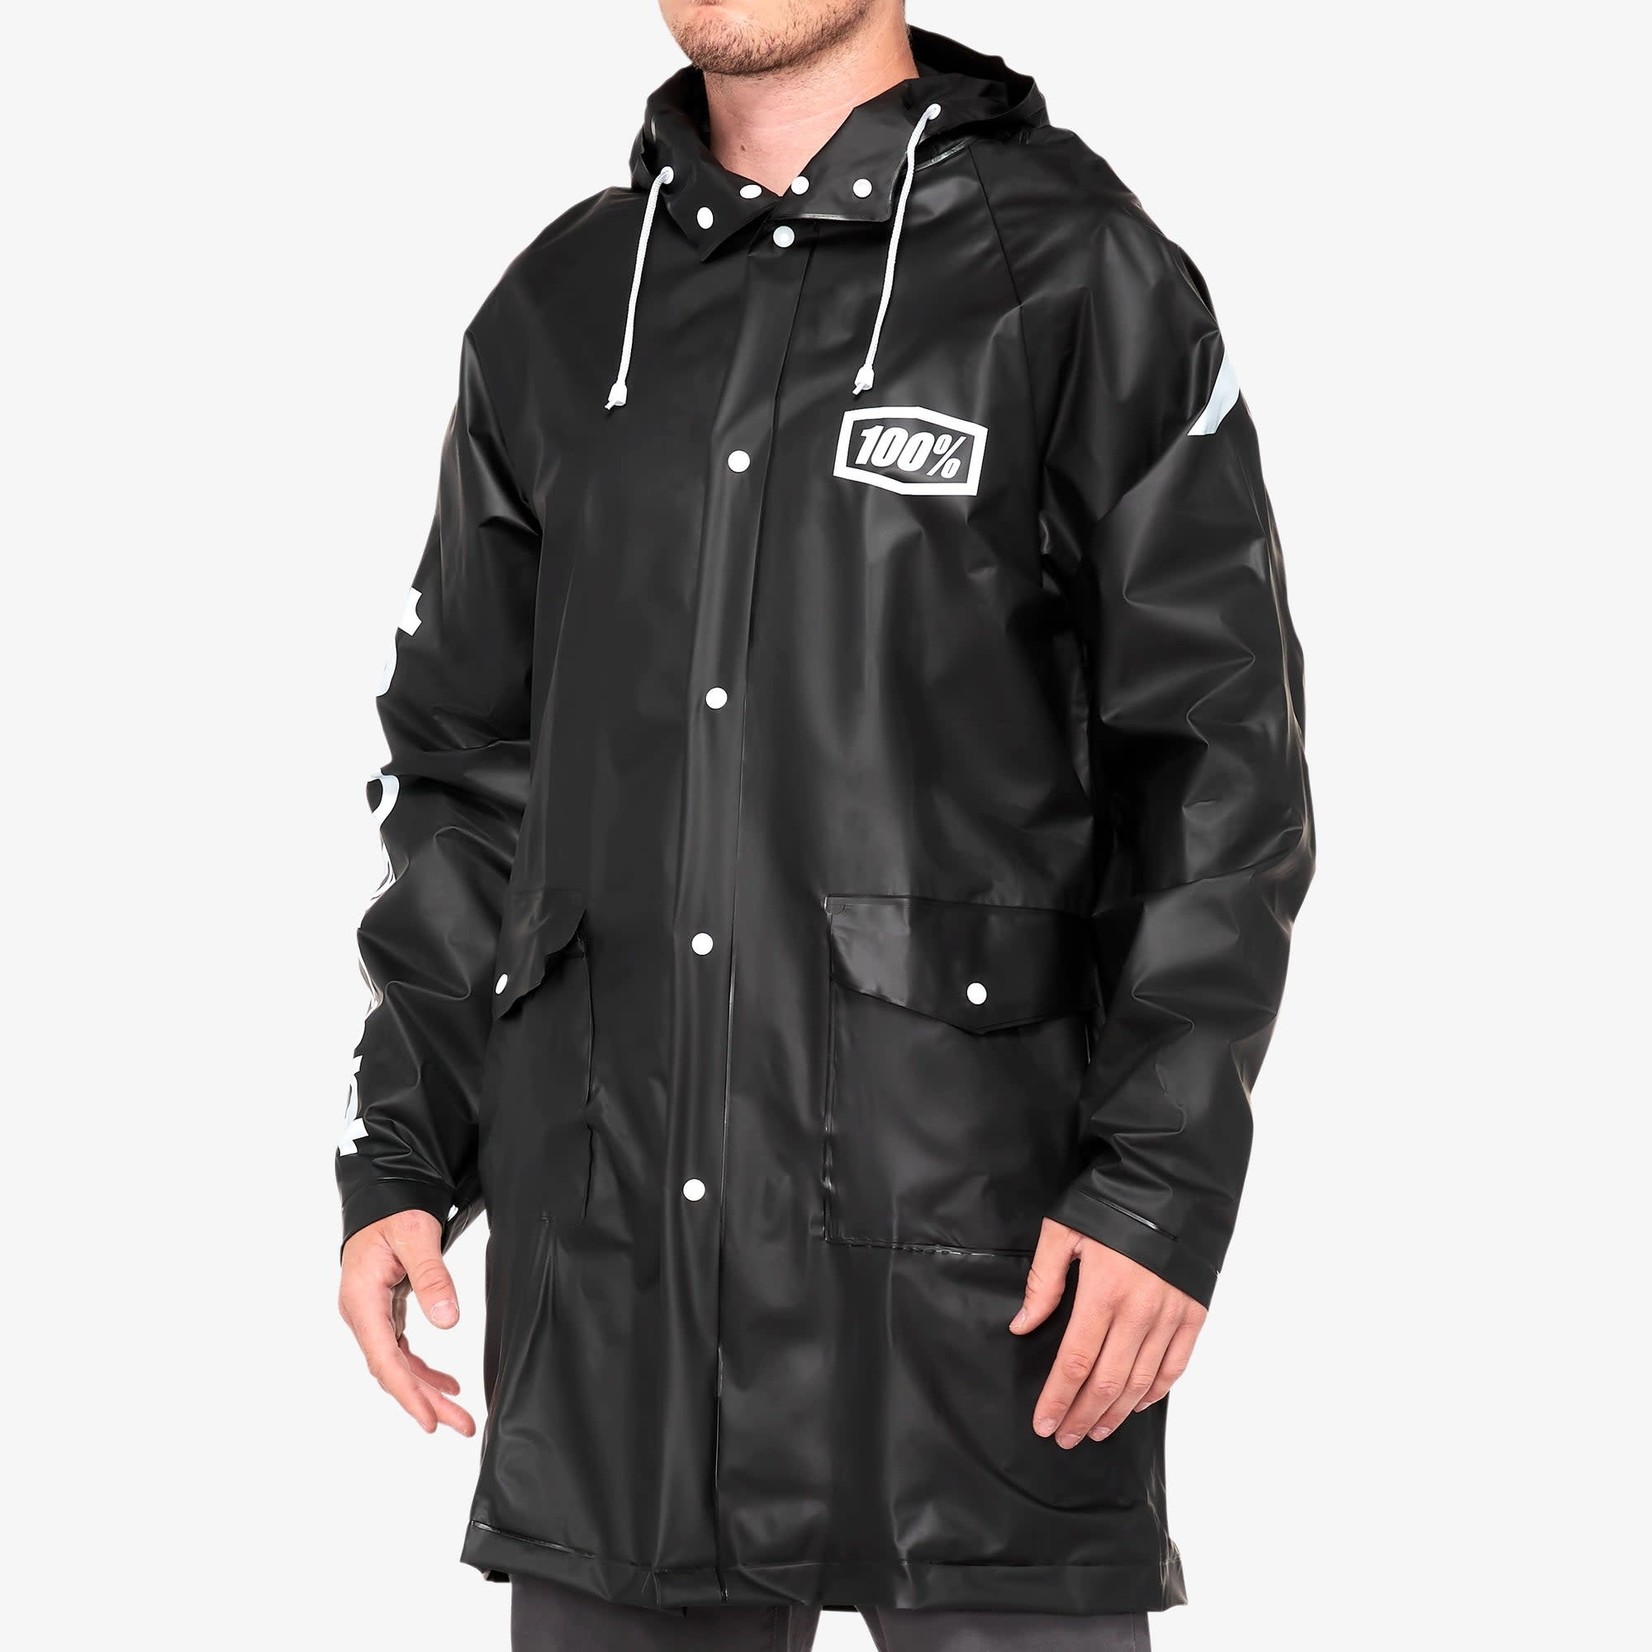 100% Torrent Mechanics Raincoat, Black